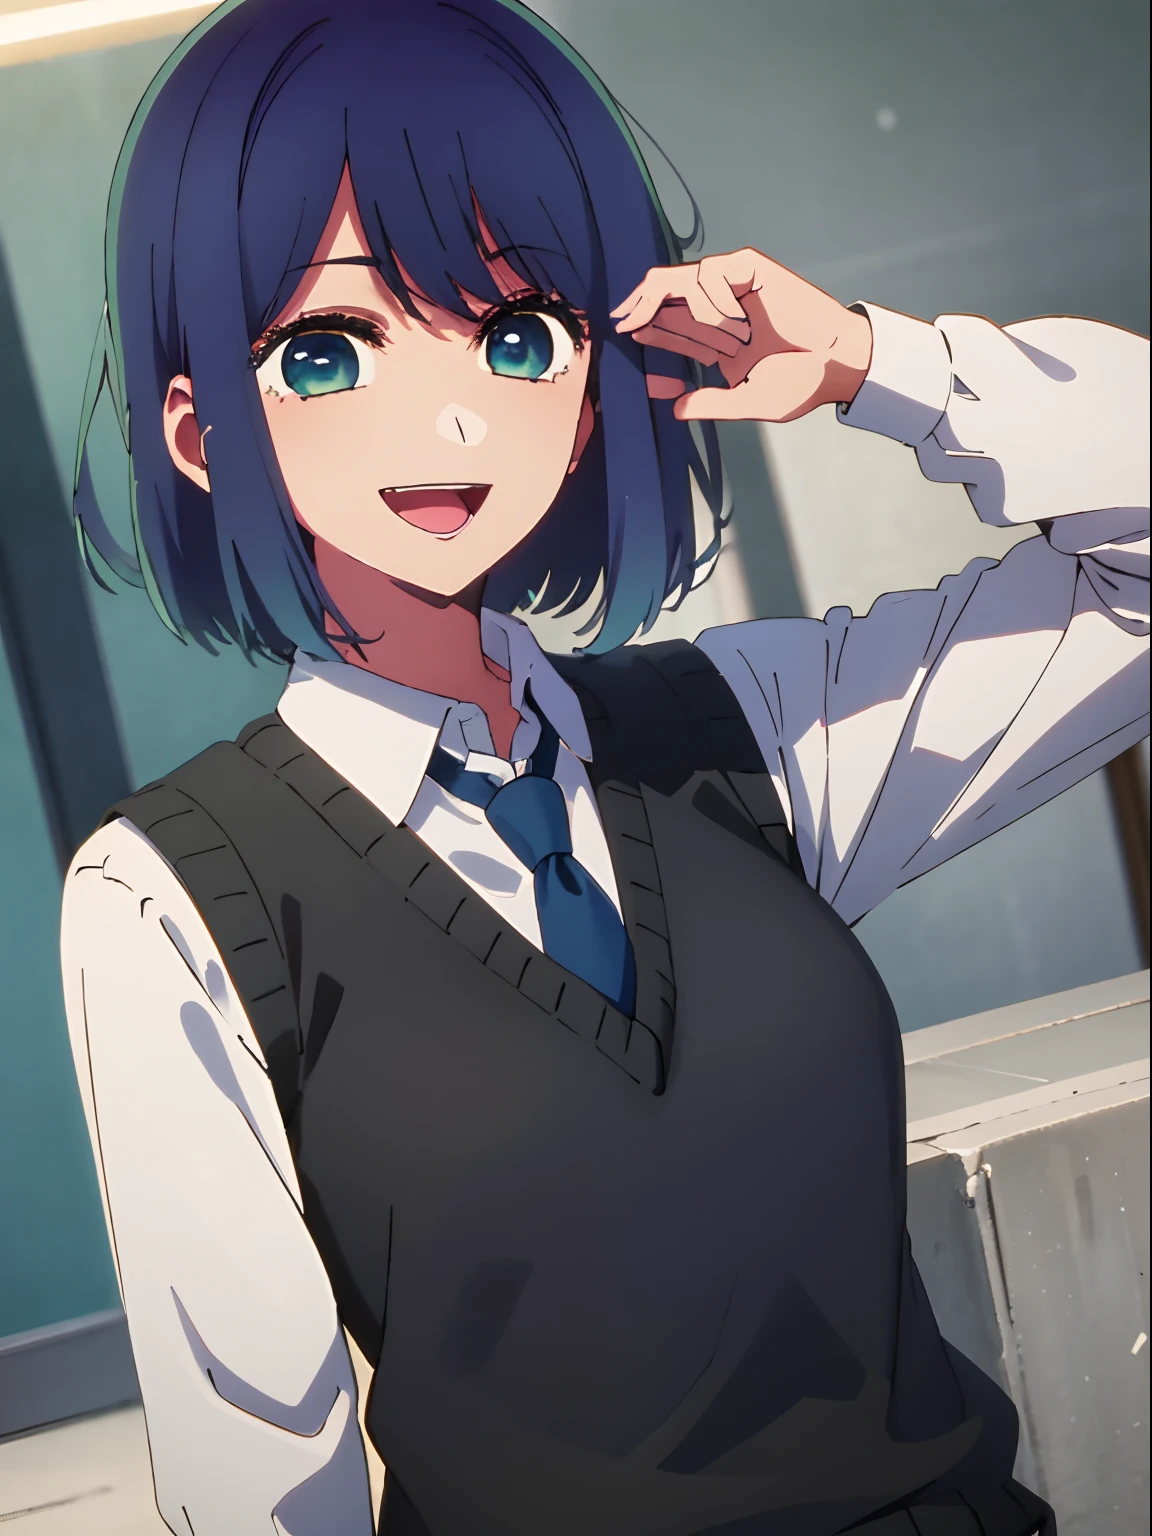 bela iluminação, 1 garota em, só, Akane, camisa branca, Colete suéter, colete preto, gravata azul, ((estilo anime))、((2D))、Um sorriso、Abra sua boca